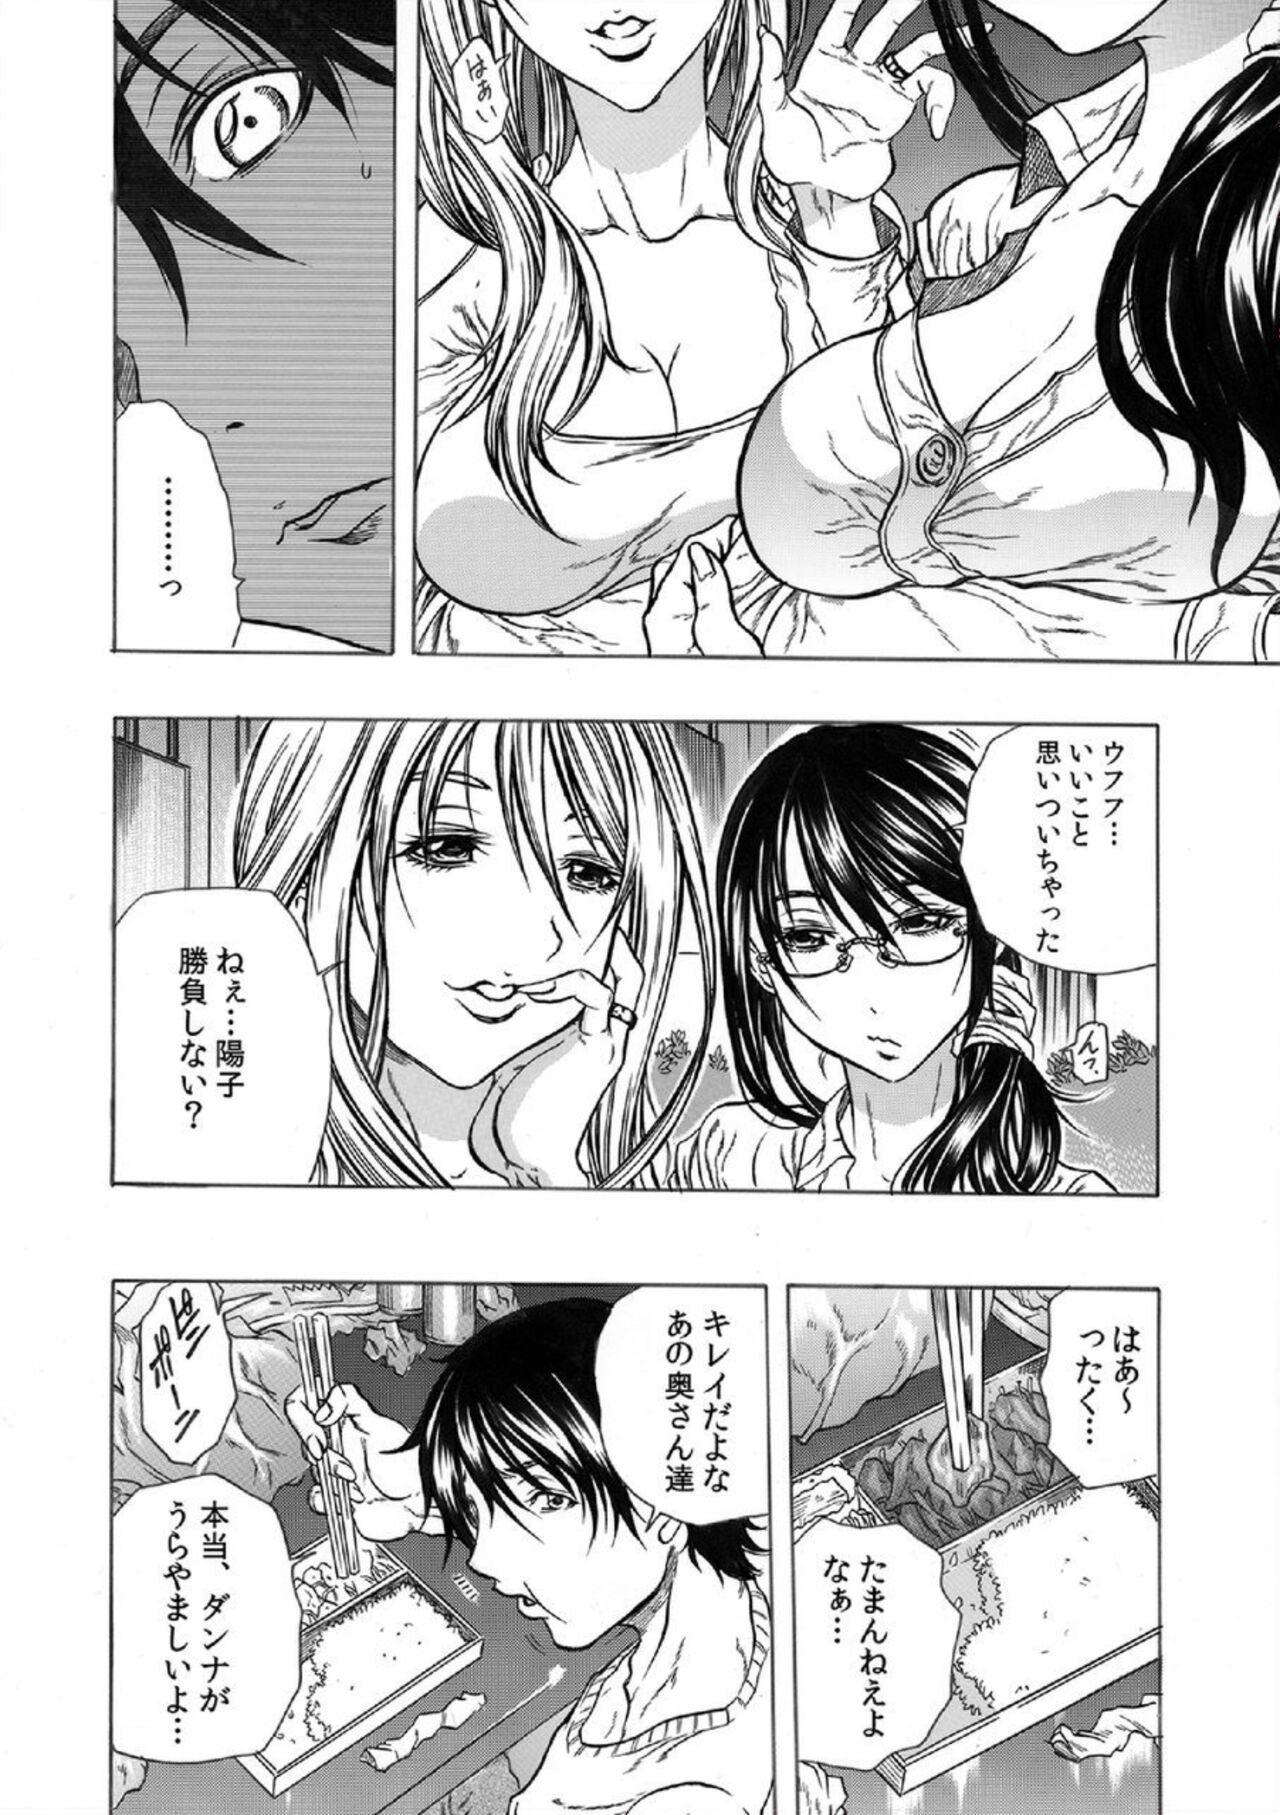 Masturbation Tonarinookusan O Kachiku Ni Suru 13 No Hōhō 1 Maledom - Page 3